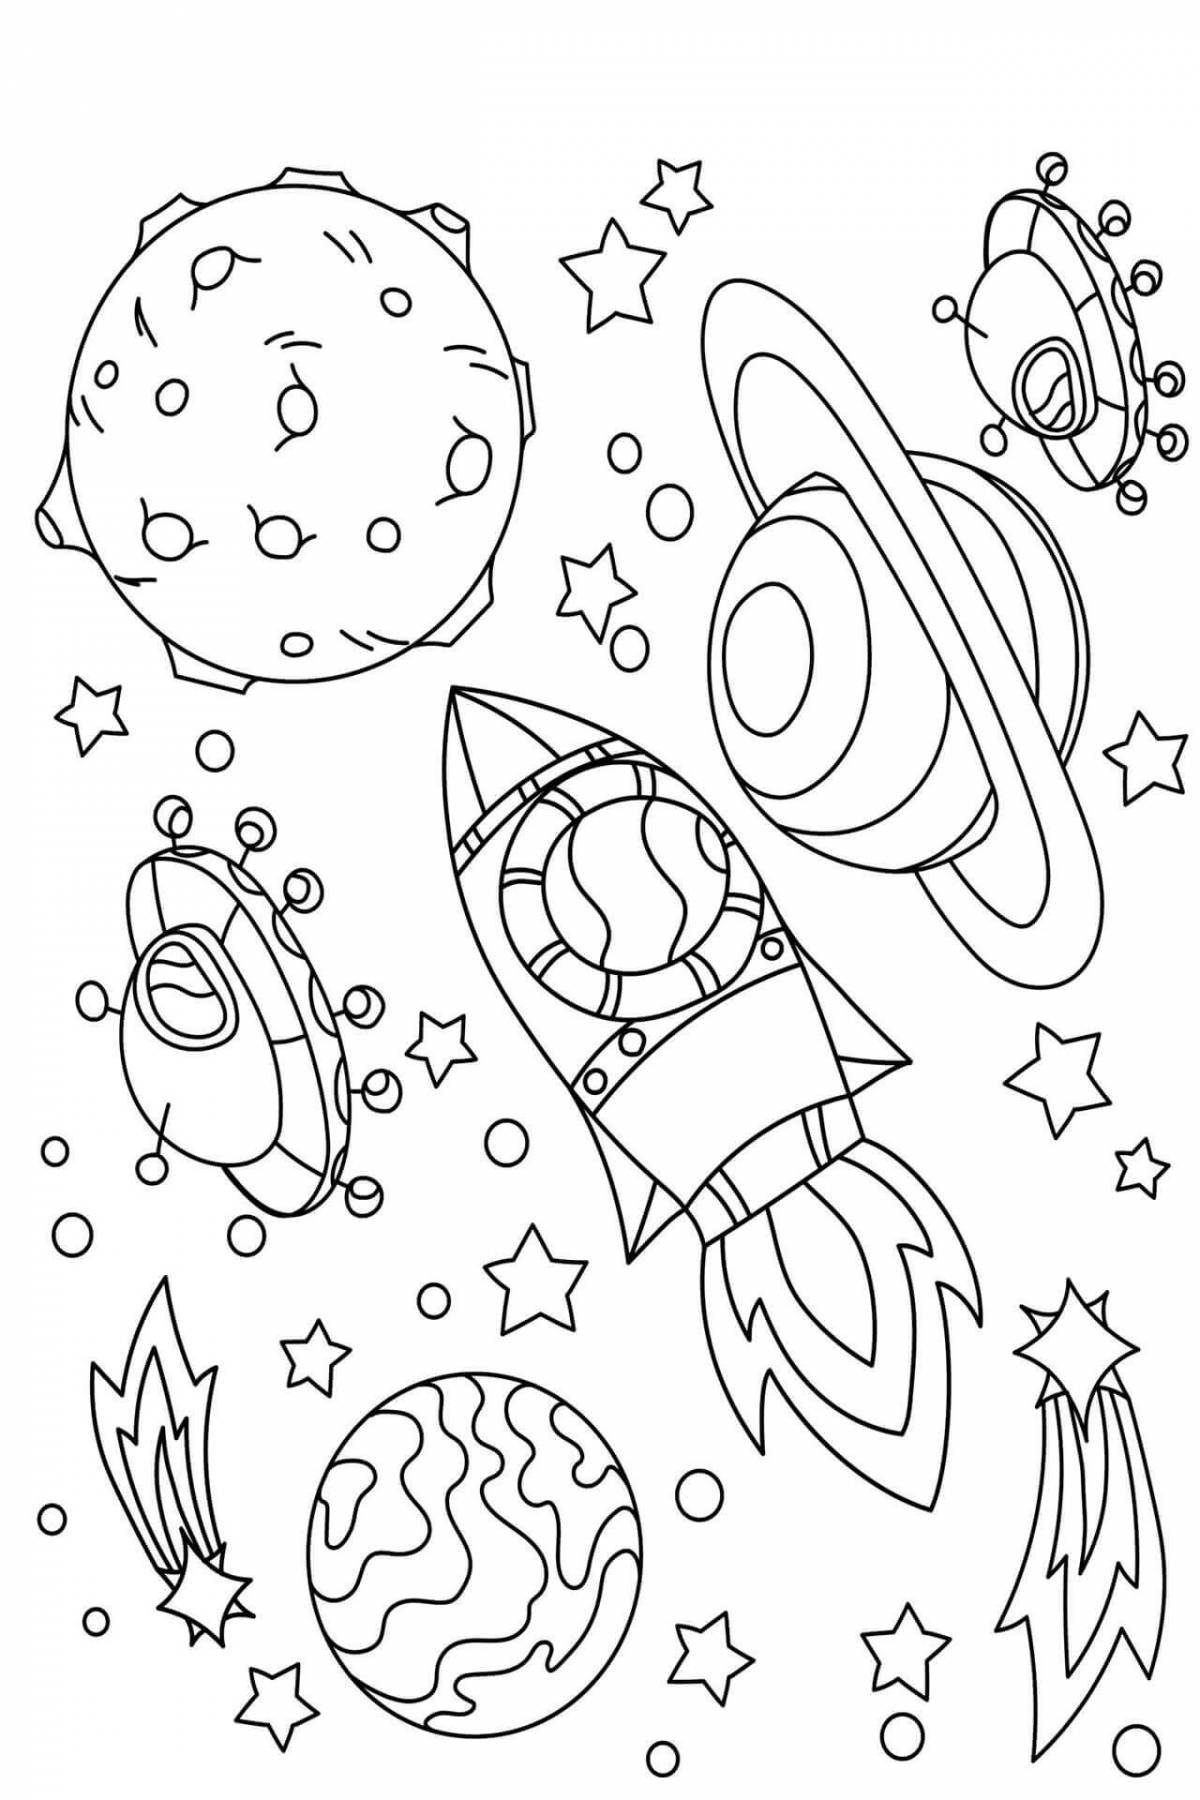 Космос раскраска для детей. Раскраска космос для детей 6-7 лет. Раскраска. В космосе. Раскраски космос для детей 4-5 лет. Раскраски космос для детей 3 4 лет